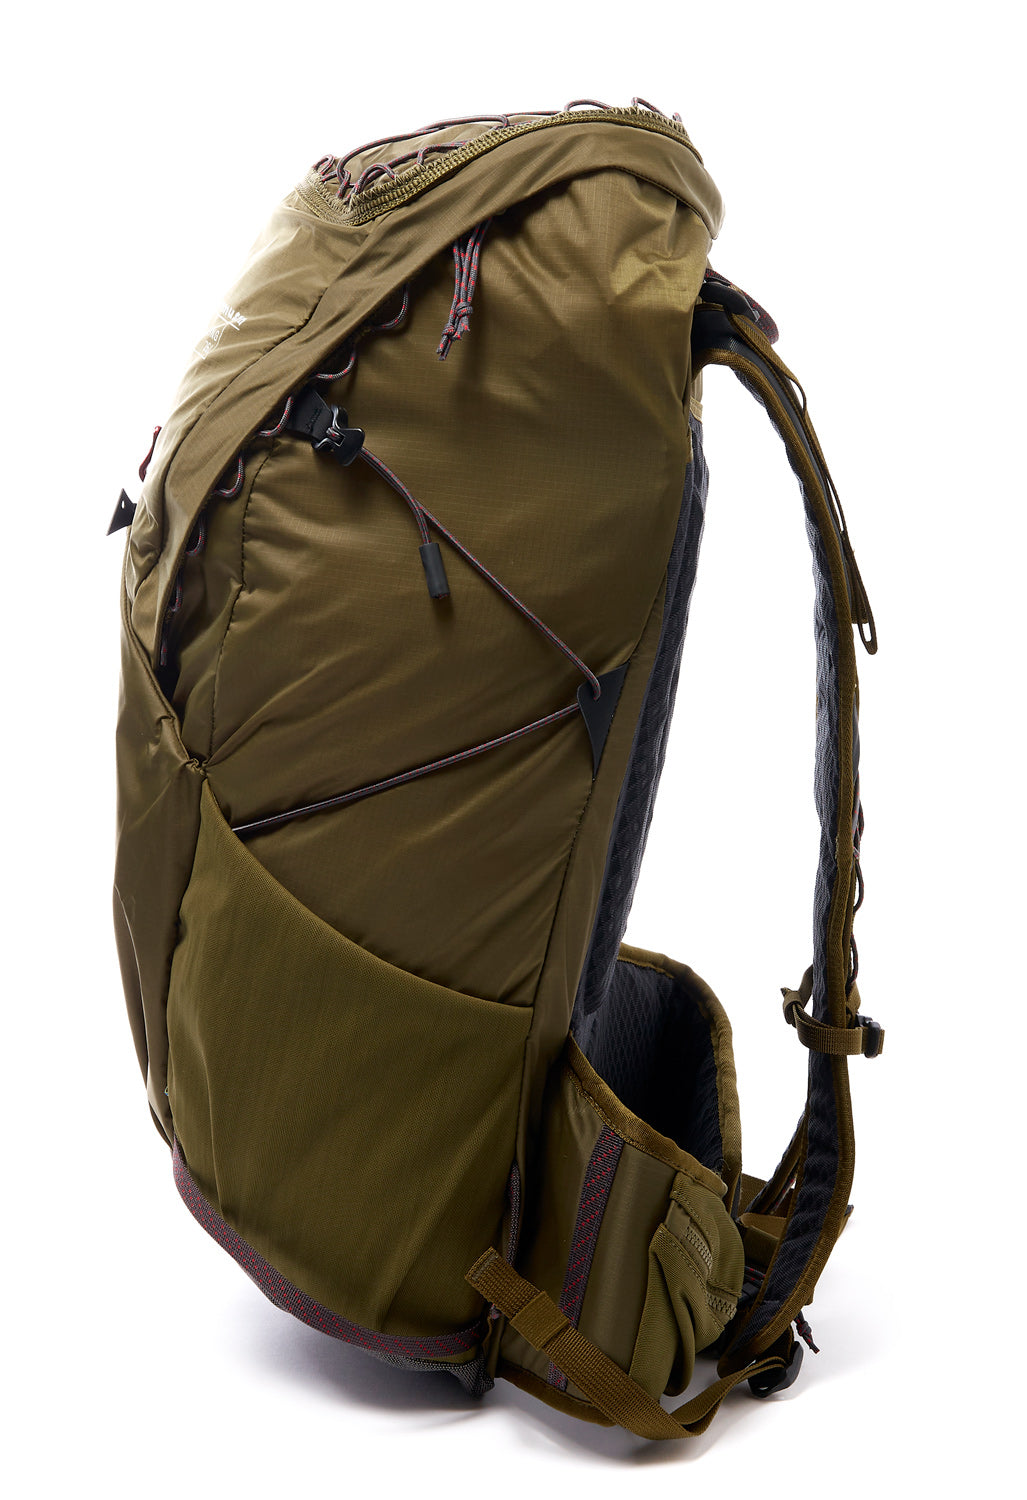 Klattermusen Gilling Backpack 26L - Olive